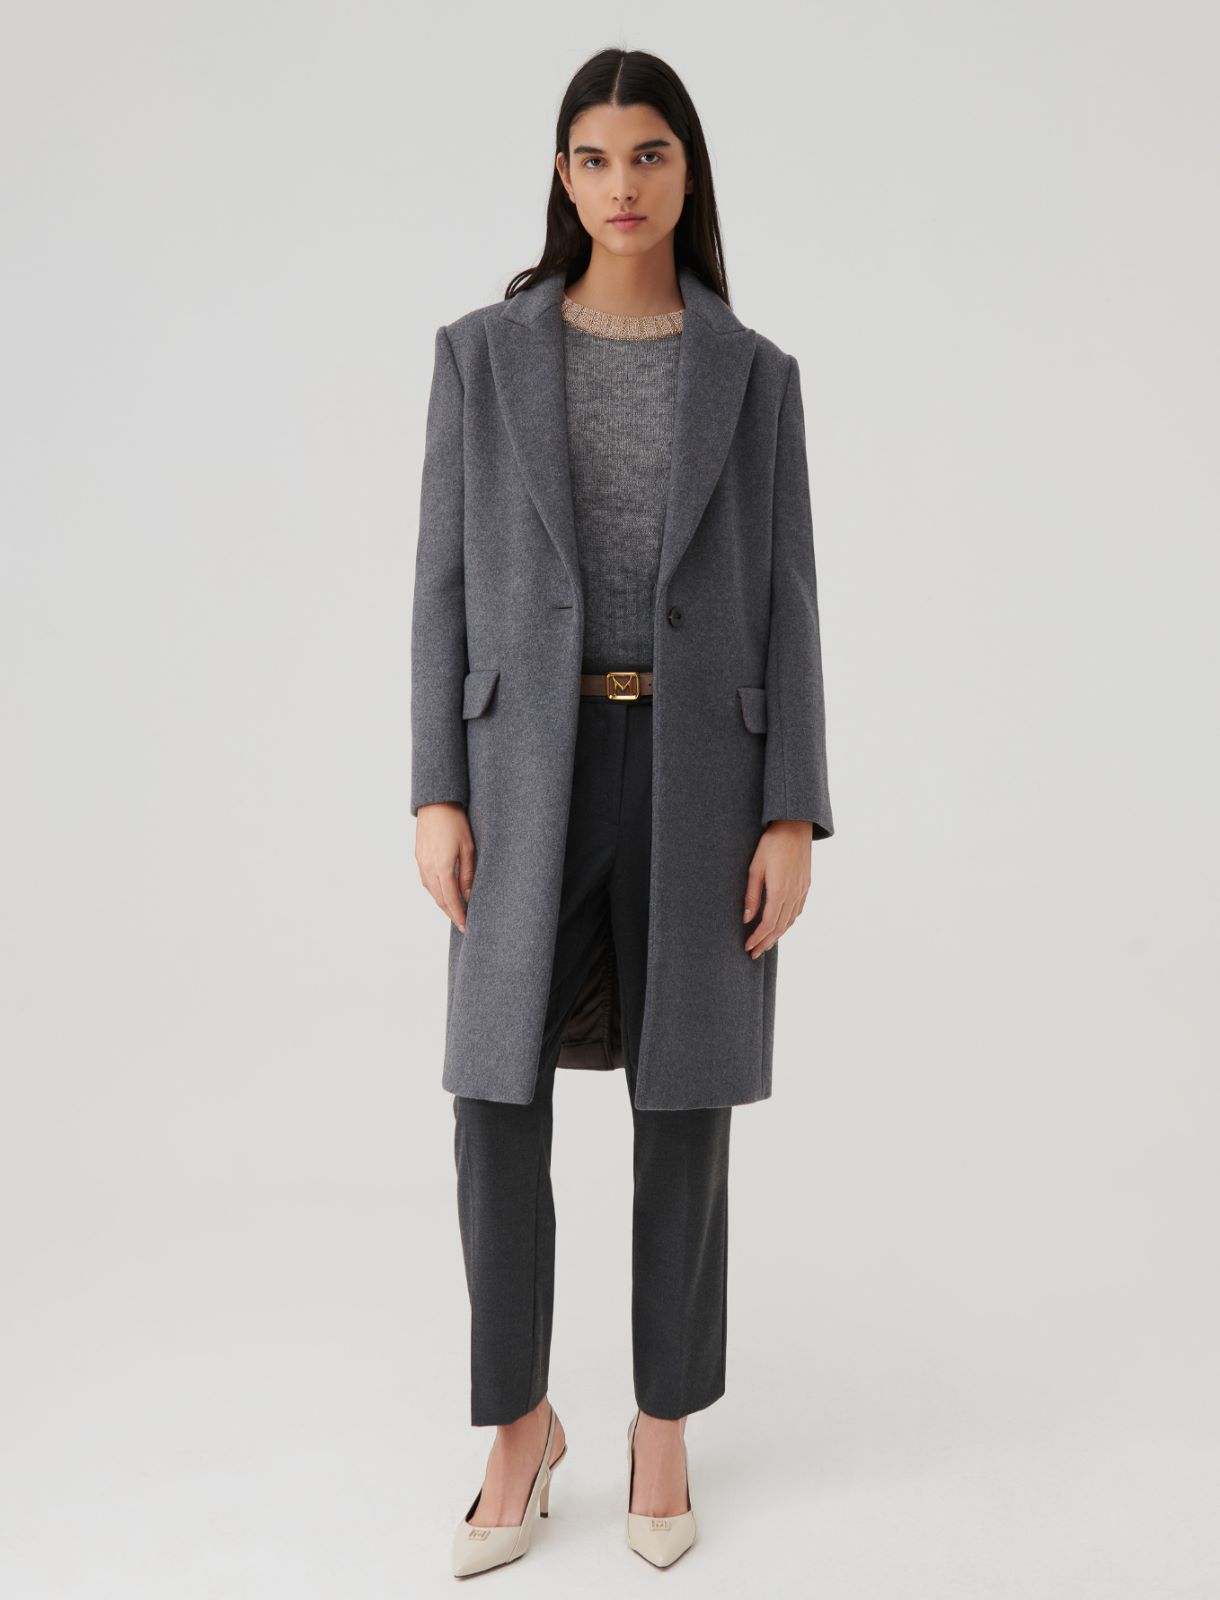 Cloth coat - Melange grey - Marella - 2